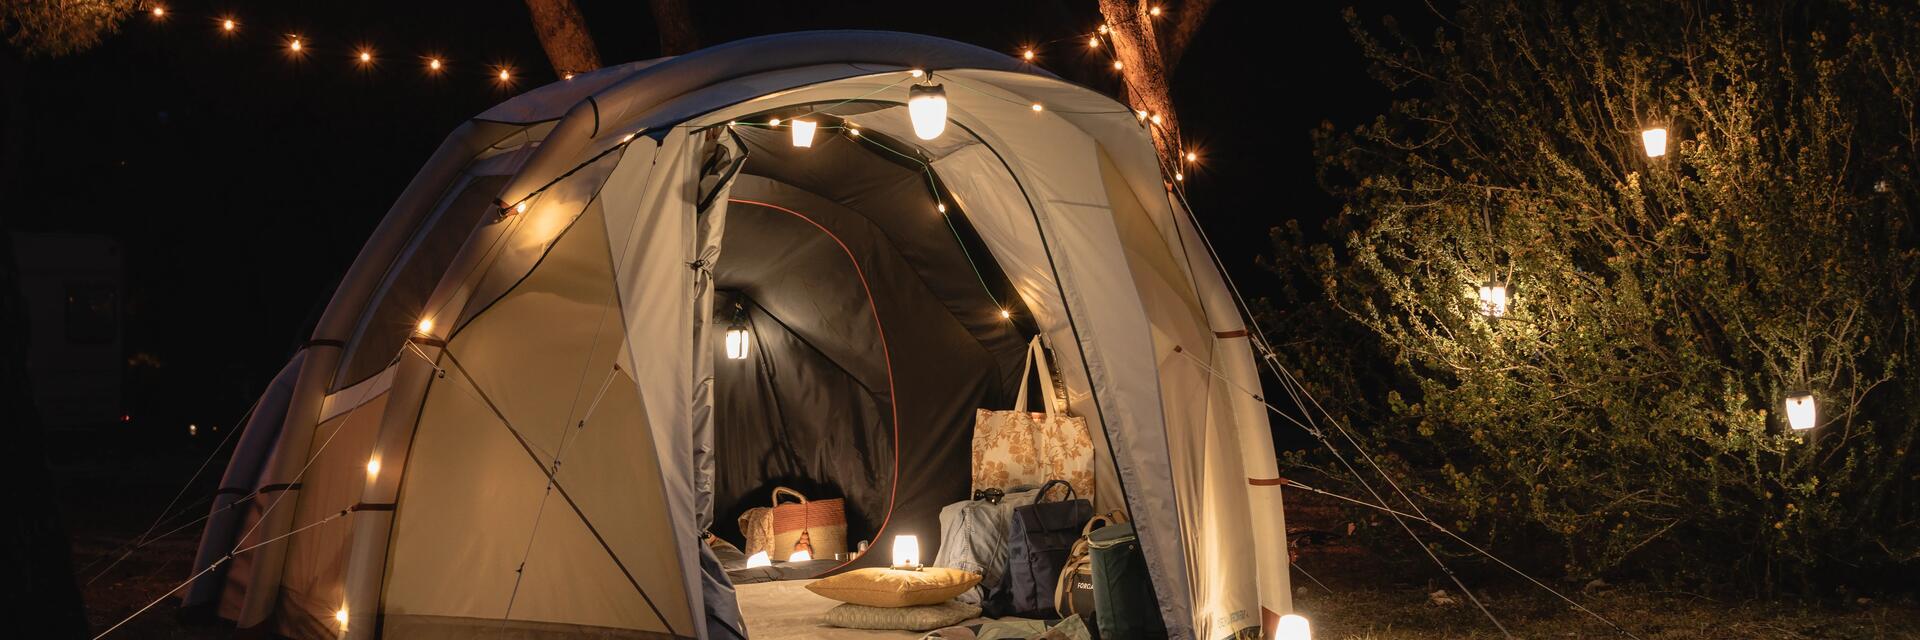 Namiot do spania na dziko z zawieszonymi lampkami  rozłożony w lesie nocą